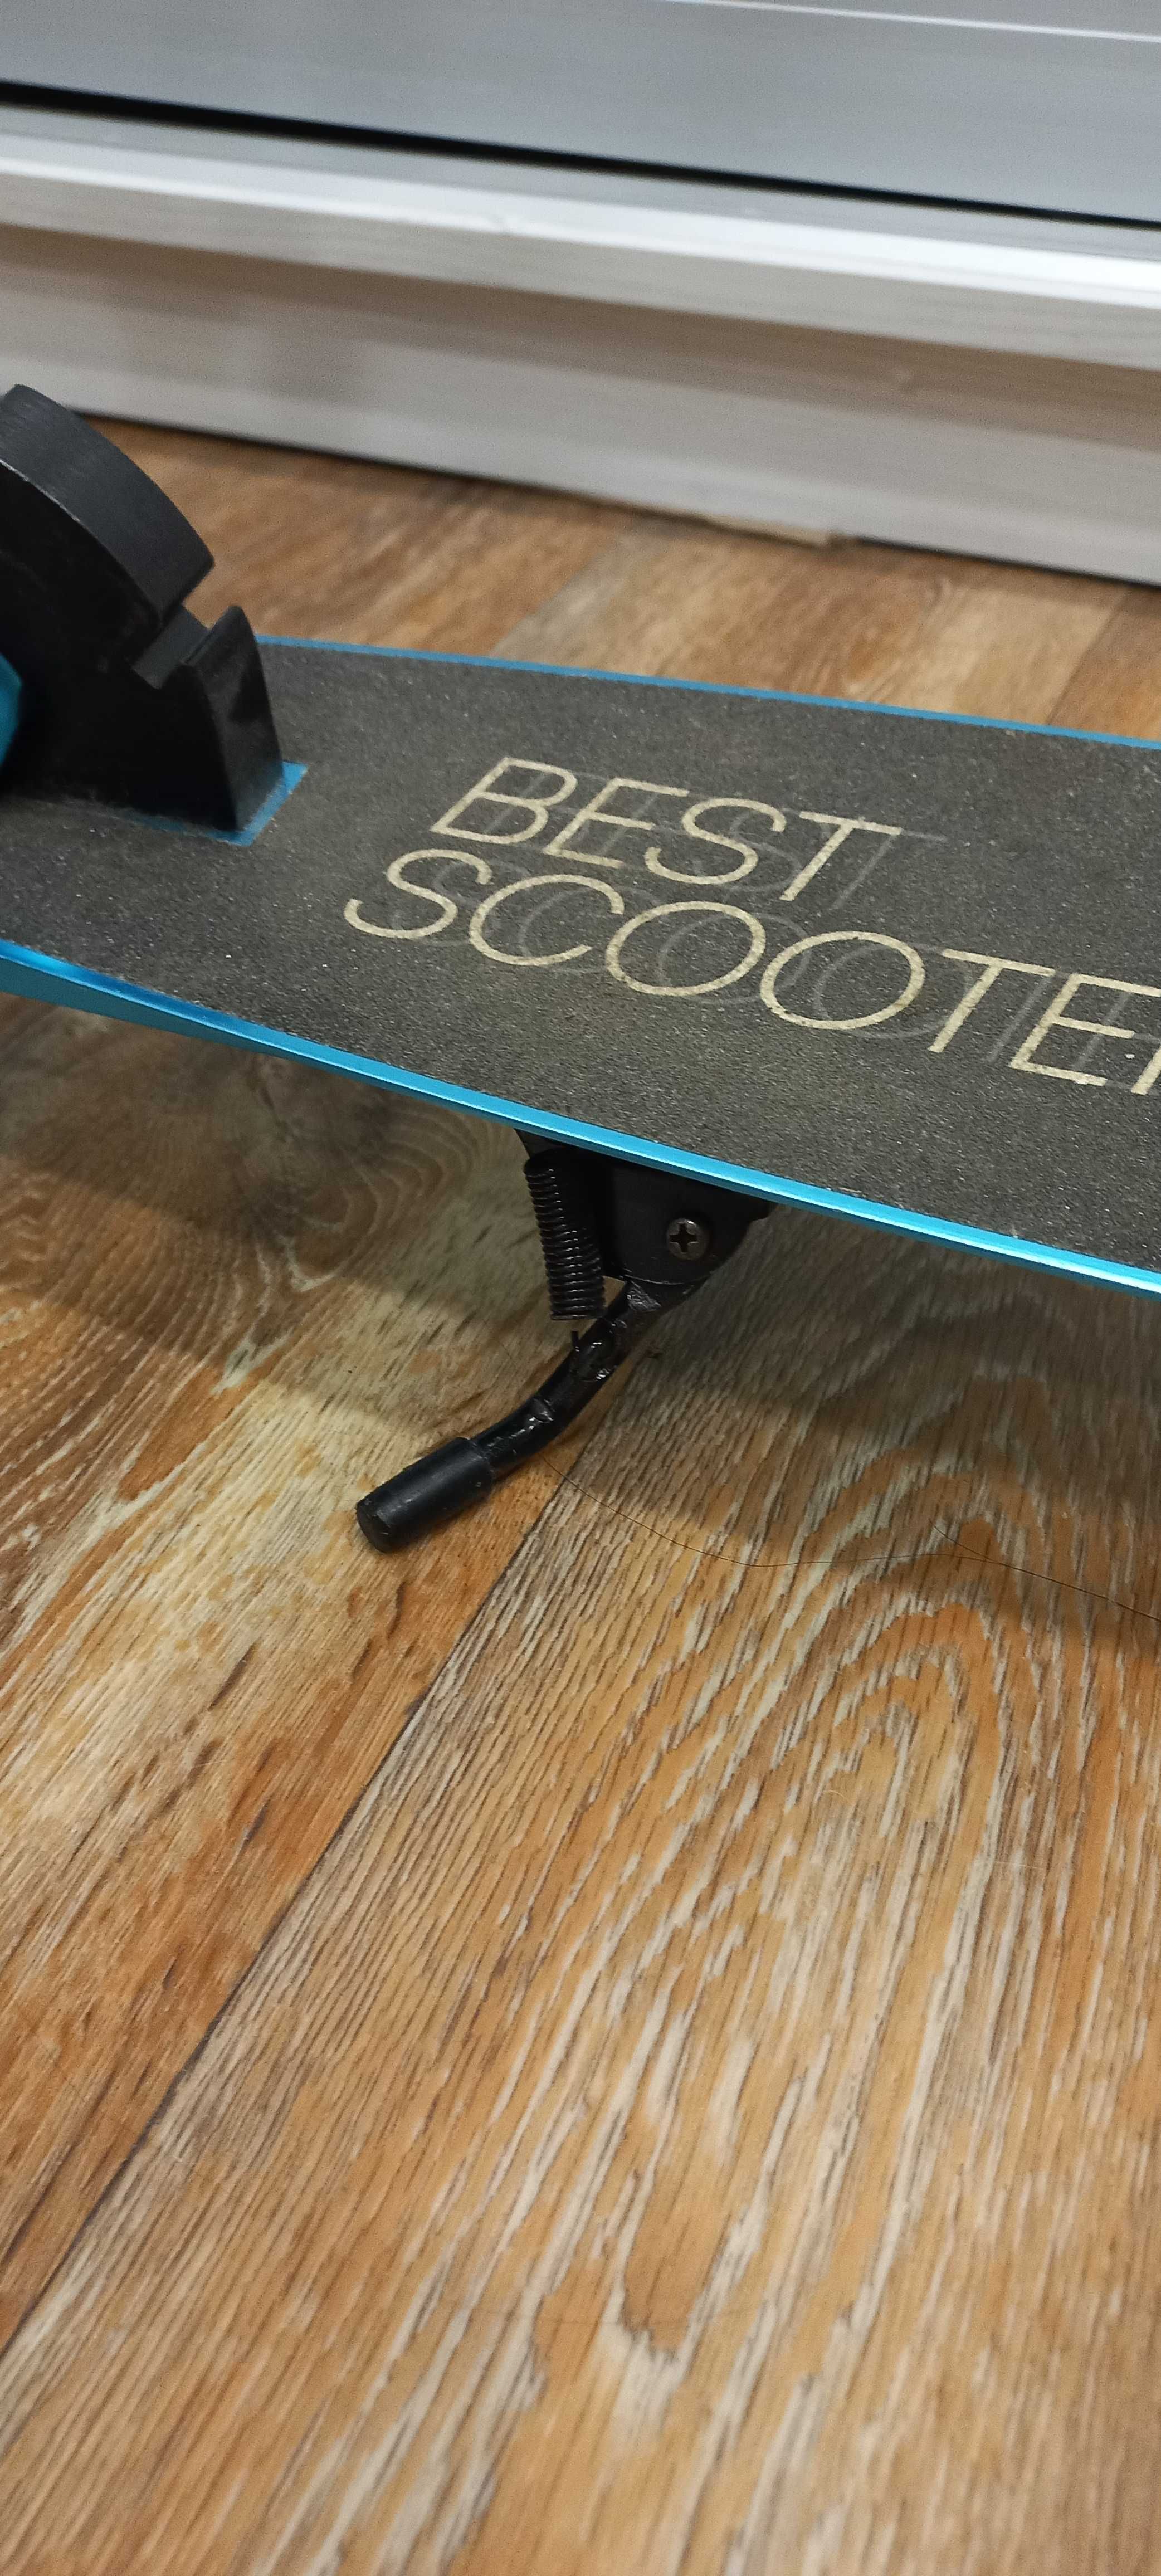 Двухколесный самокат "Best scooter" для подростков и взрослых.